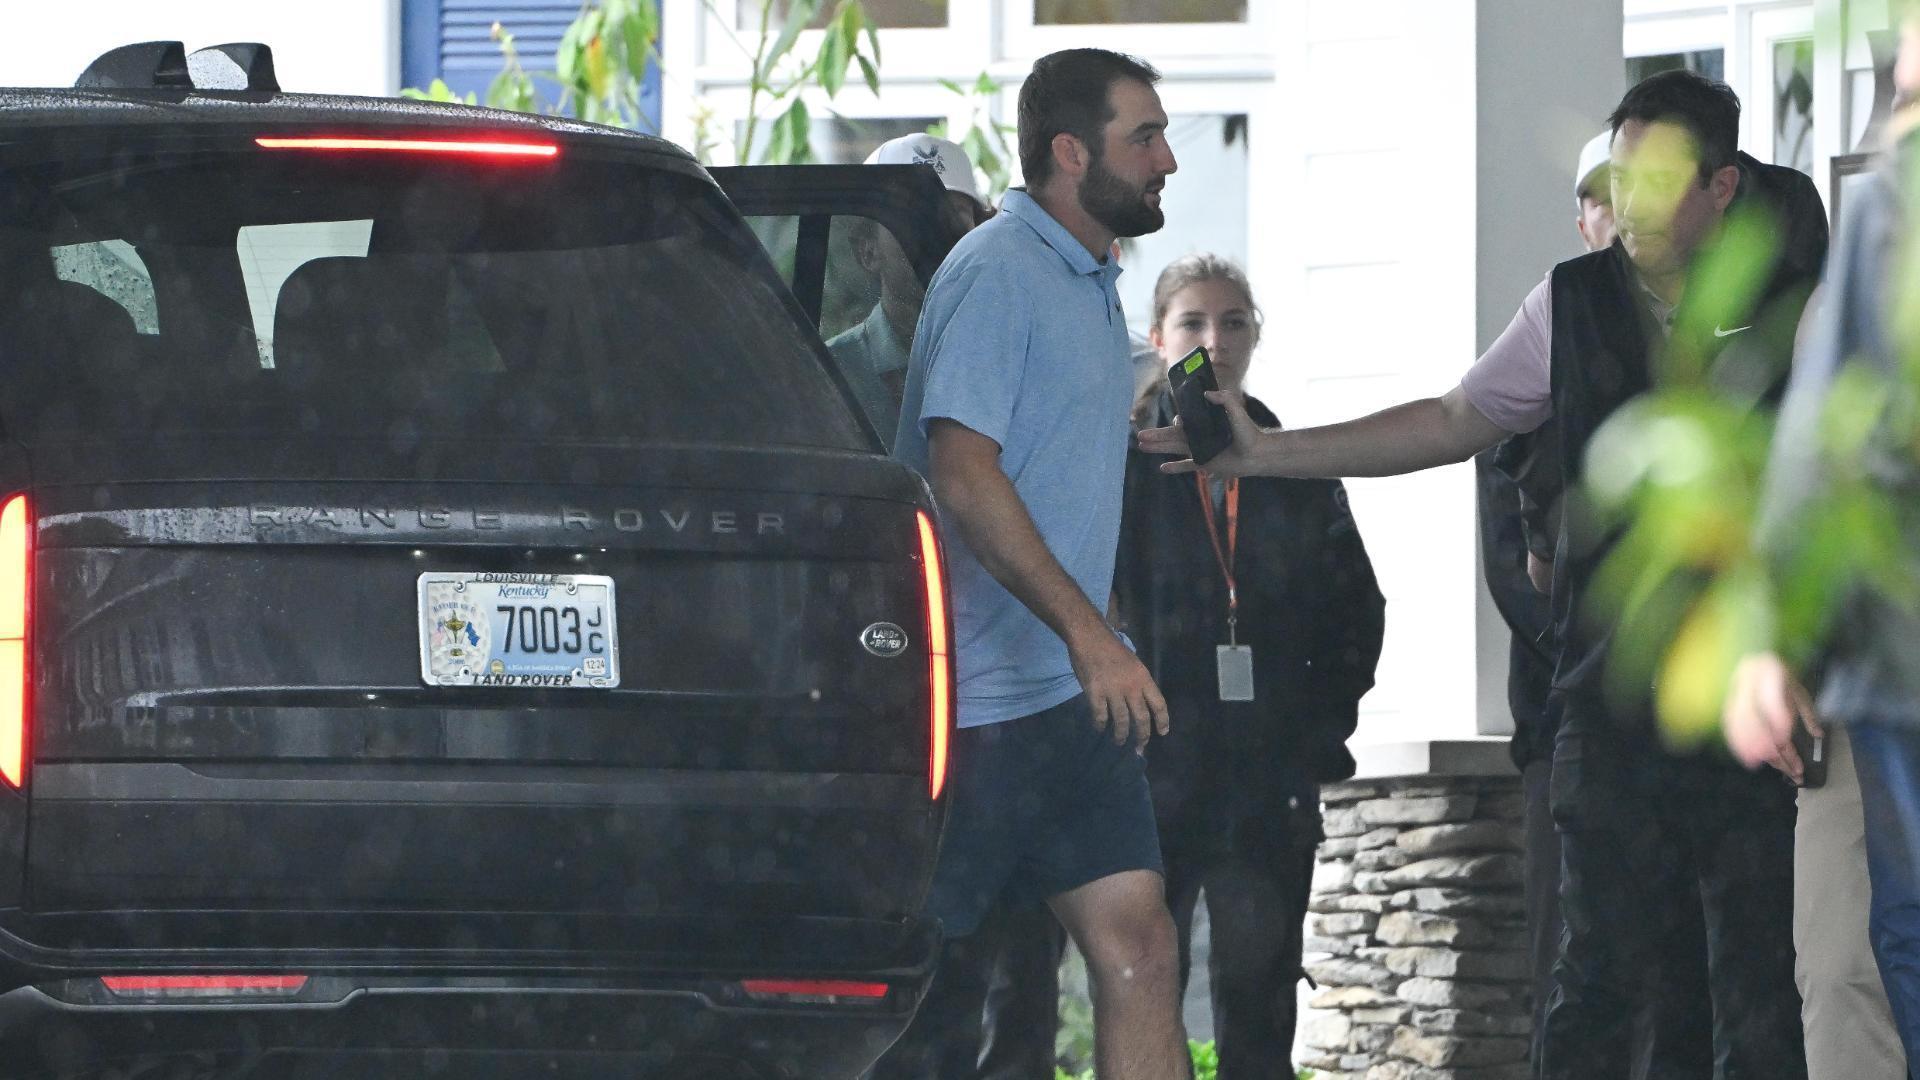 Scheffler arrives at PGA Championship after arrest